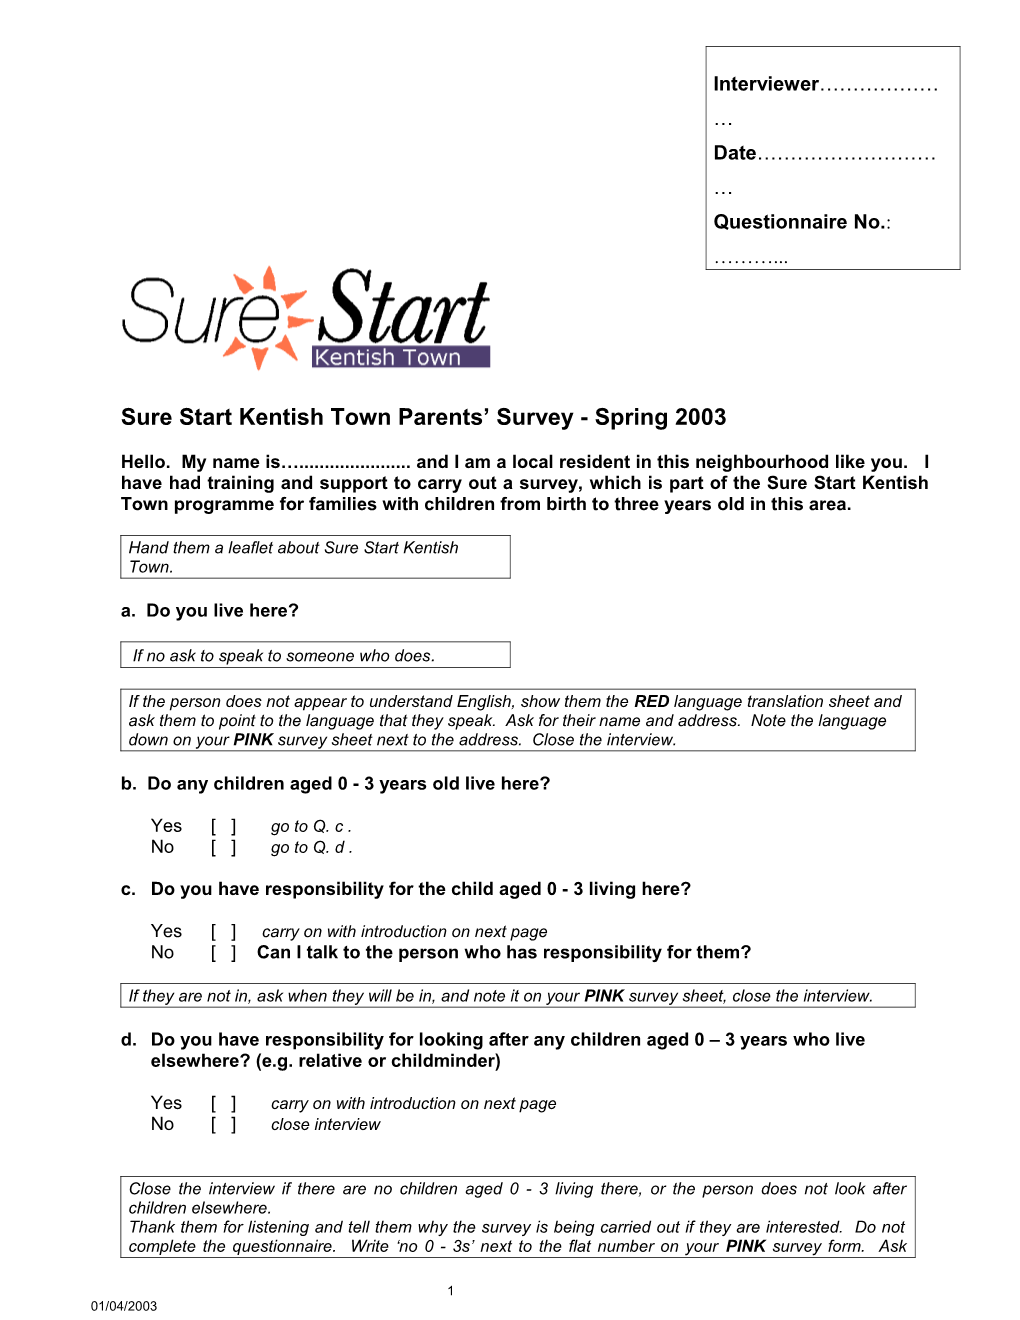 Sure Start Kentish Town Parents Survey - Spring 2003